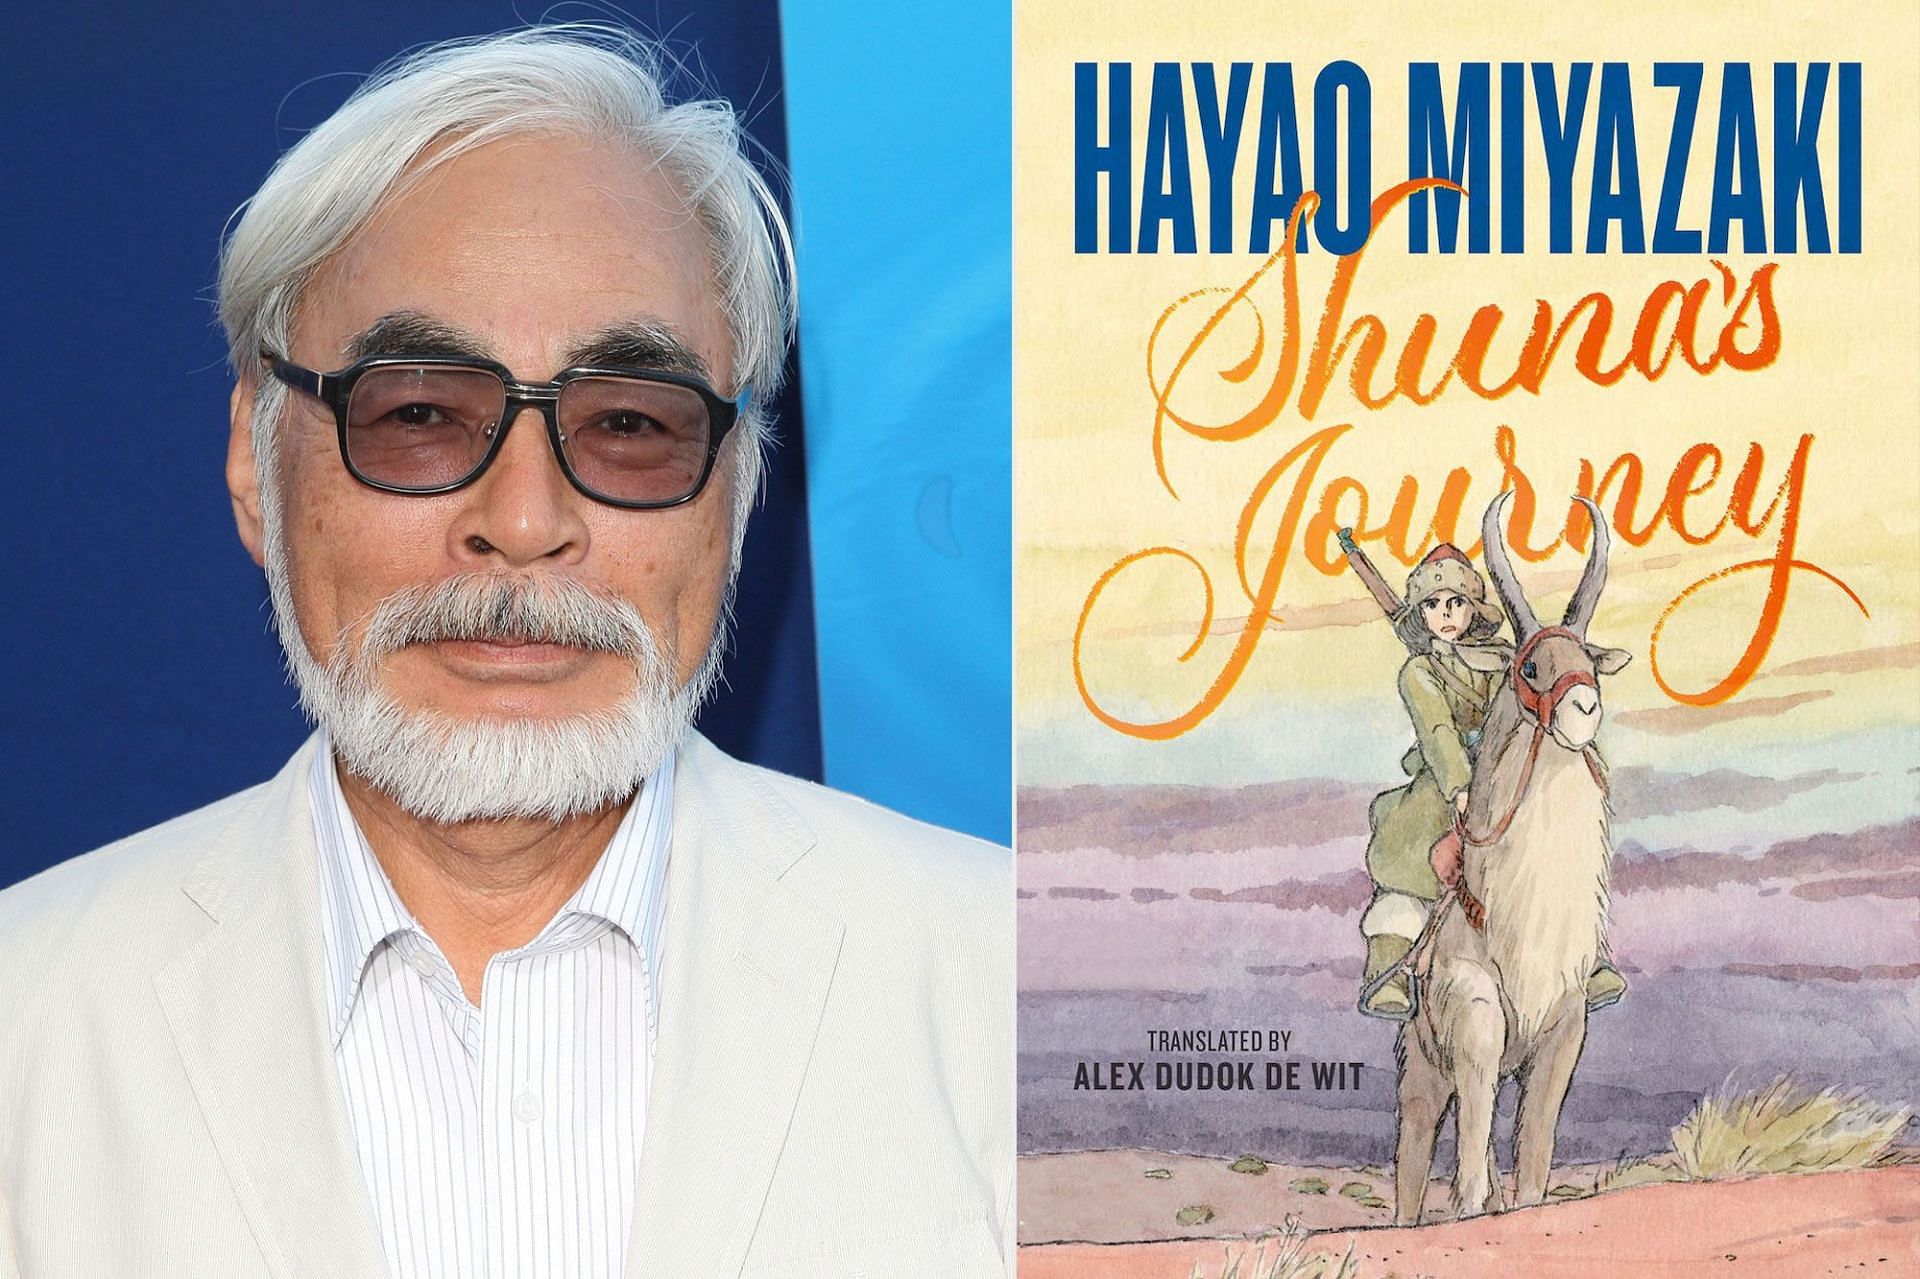 Hayao Miyazaki with Shuna